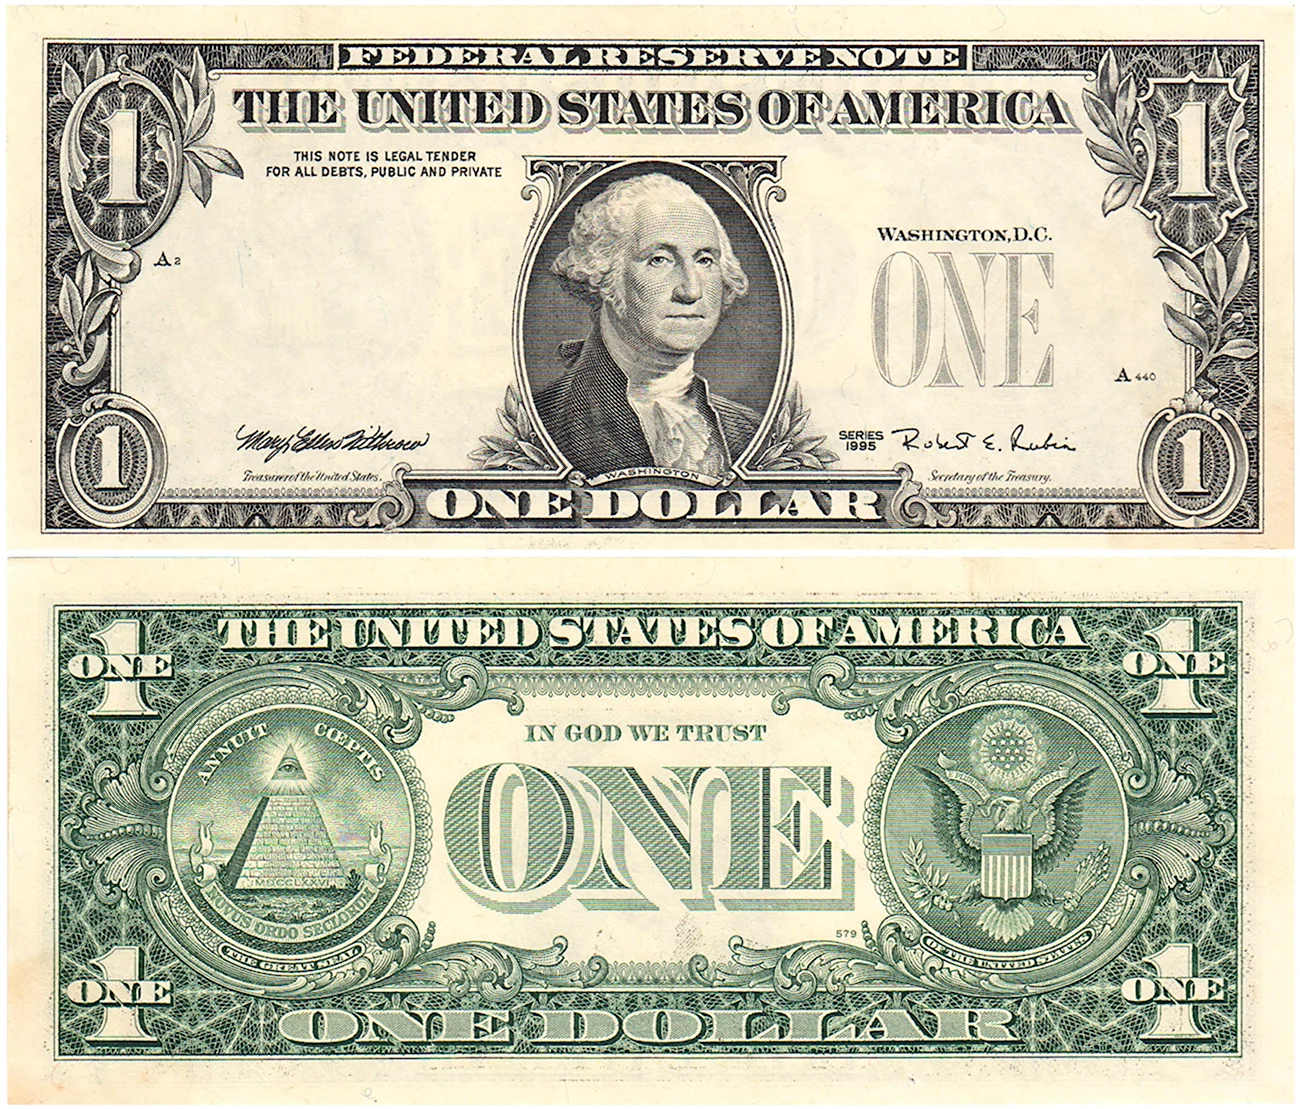 Банкнота 1 доллар США. Картинка